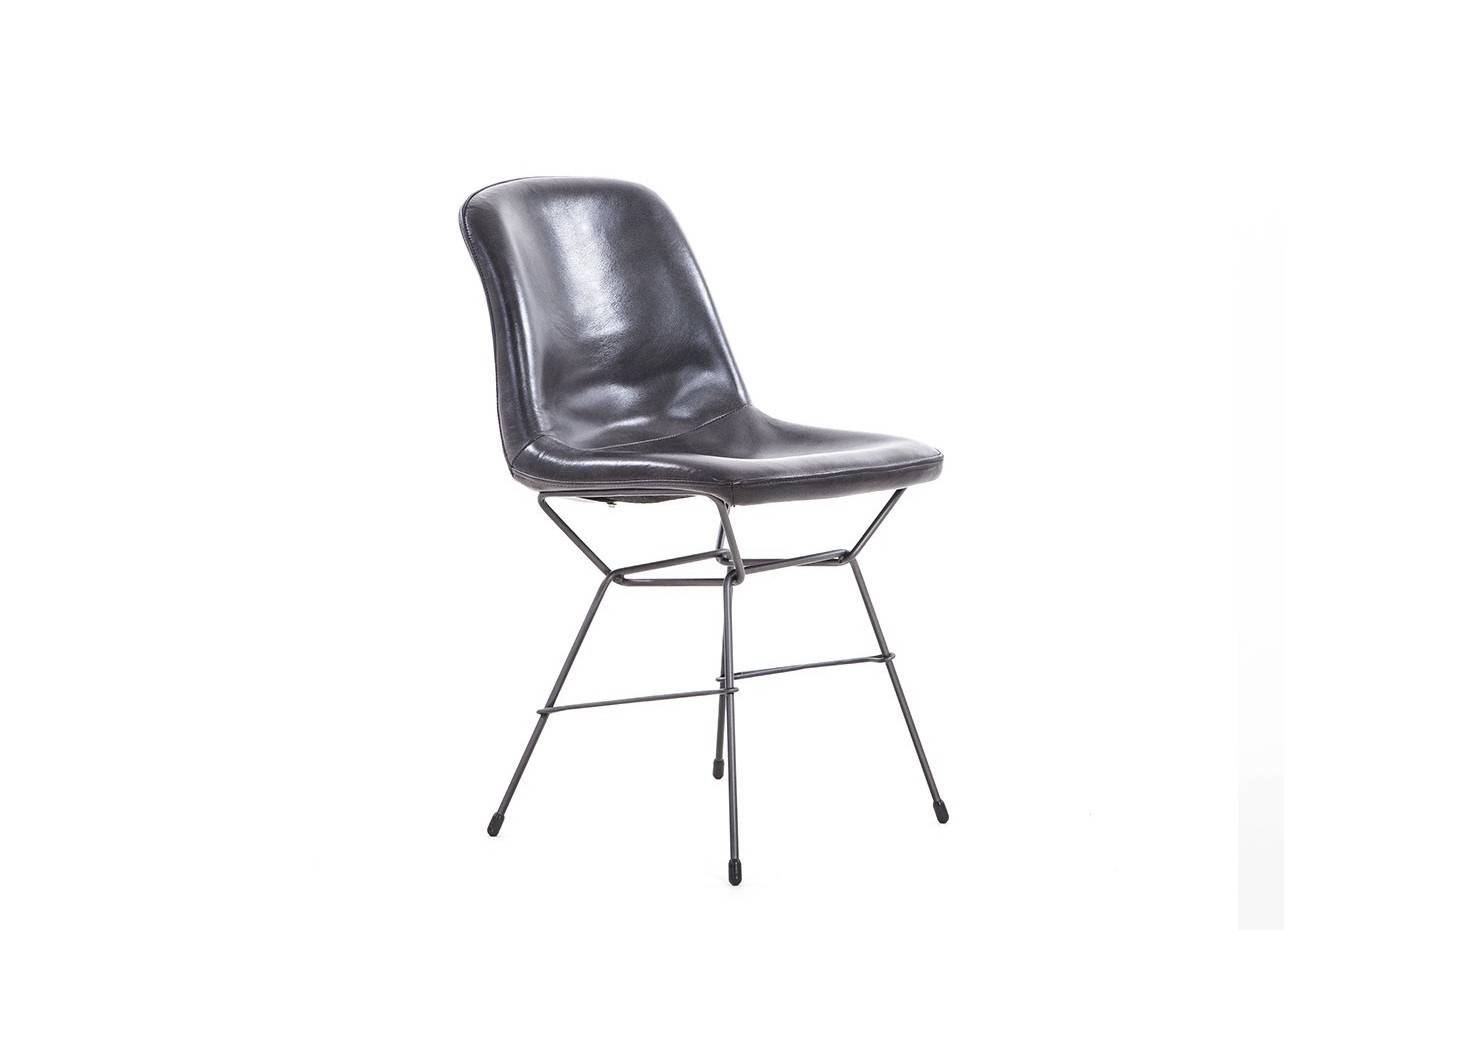 Chaise avec revêtement en cuir- coloris gris